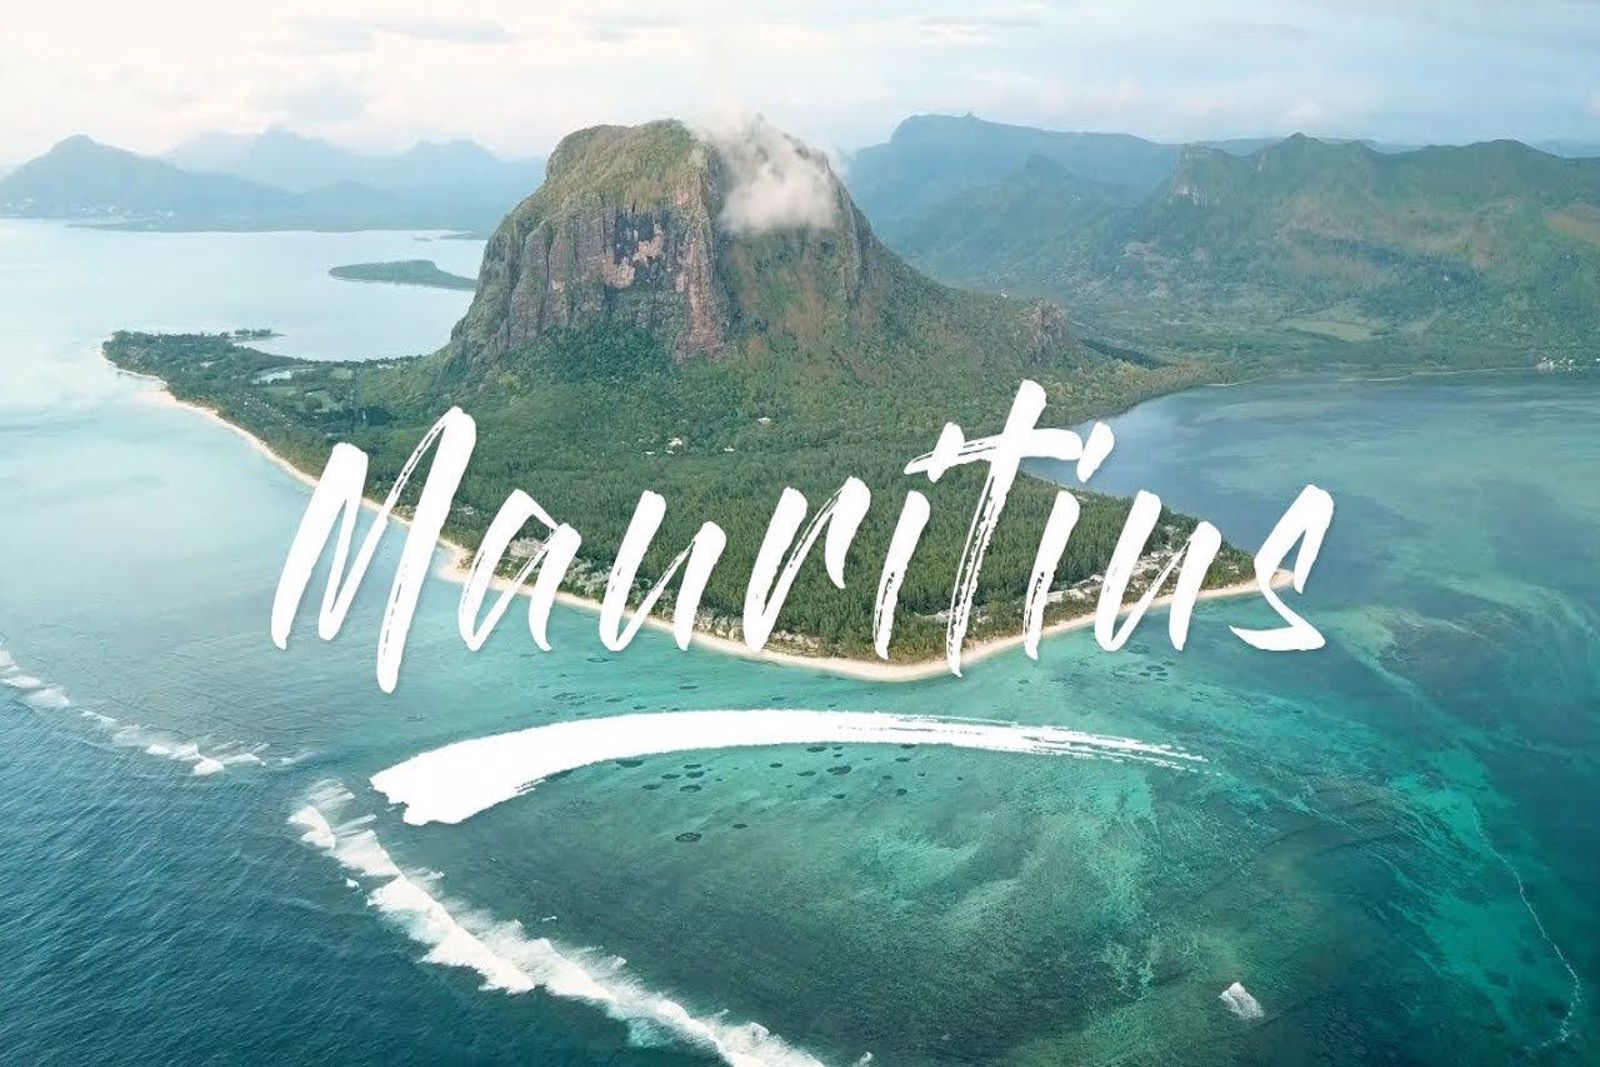 Mauritius Turu